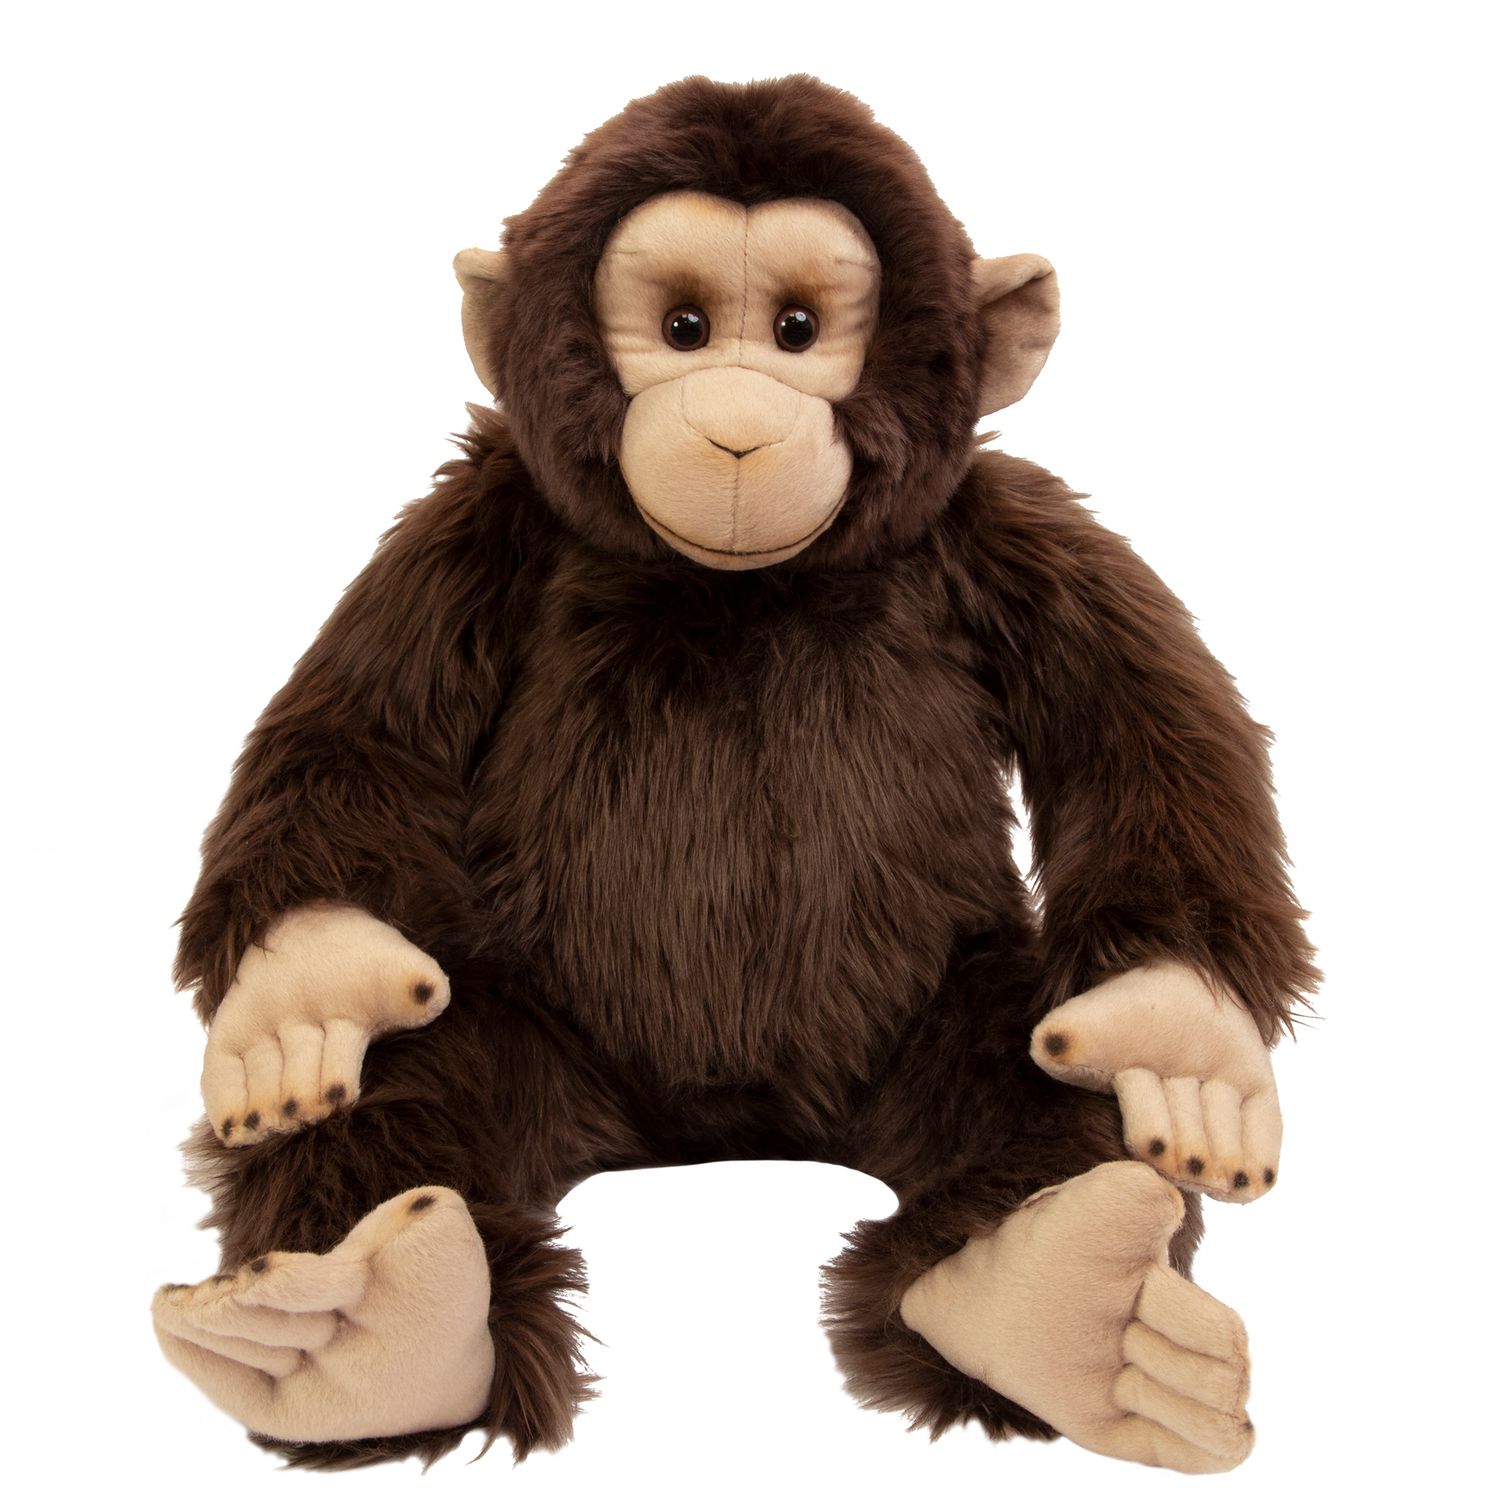 Fao Schwarz 10-inch Toy Plush Monkey